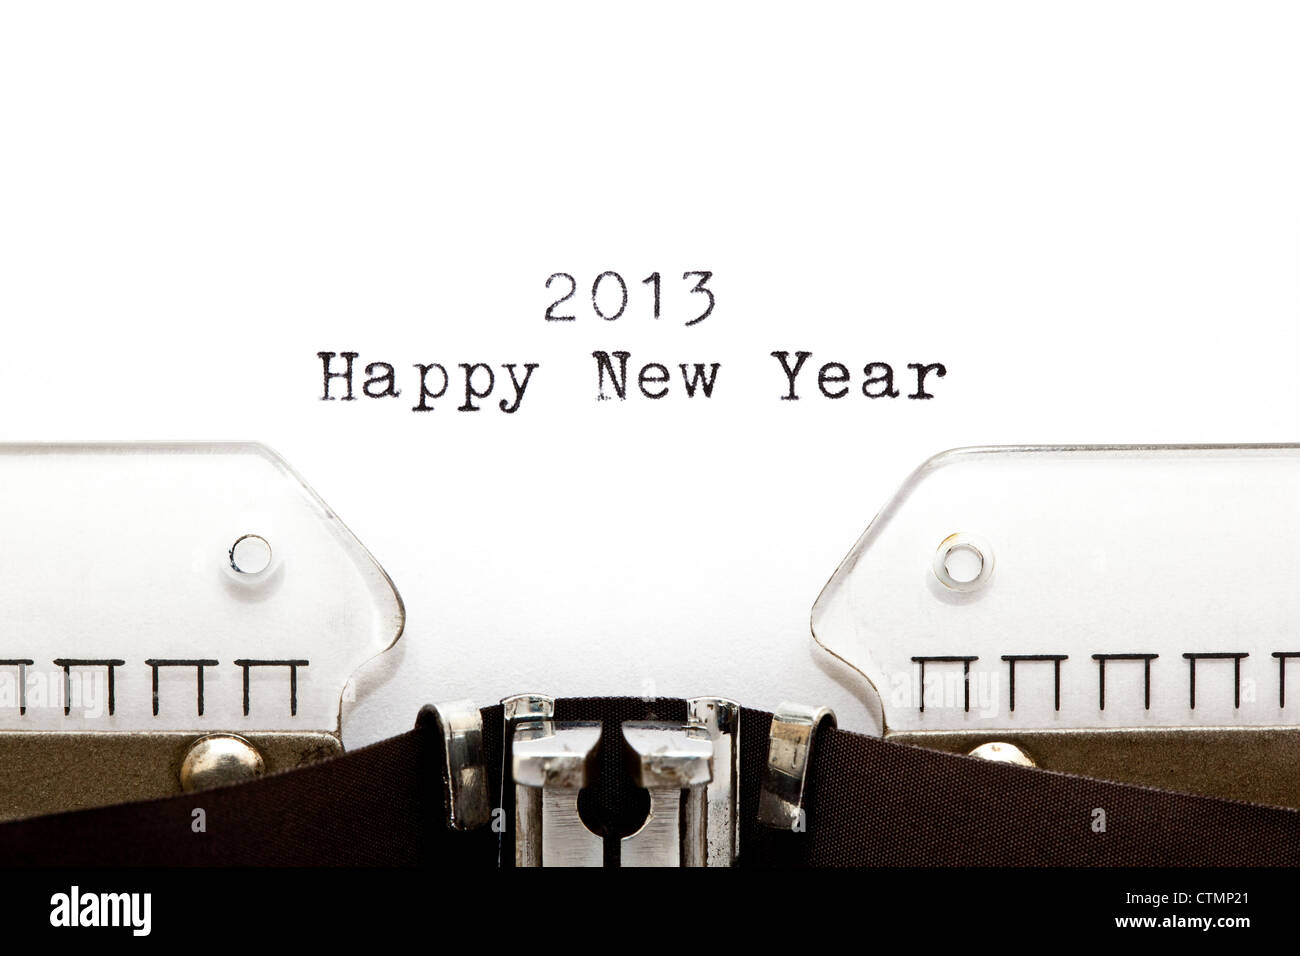 Concepto imagen con 2013 Feliz año nuevo escrito en una vieja máquina de escribir Foto de stock